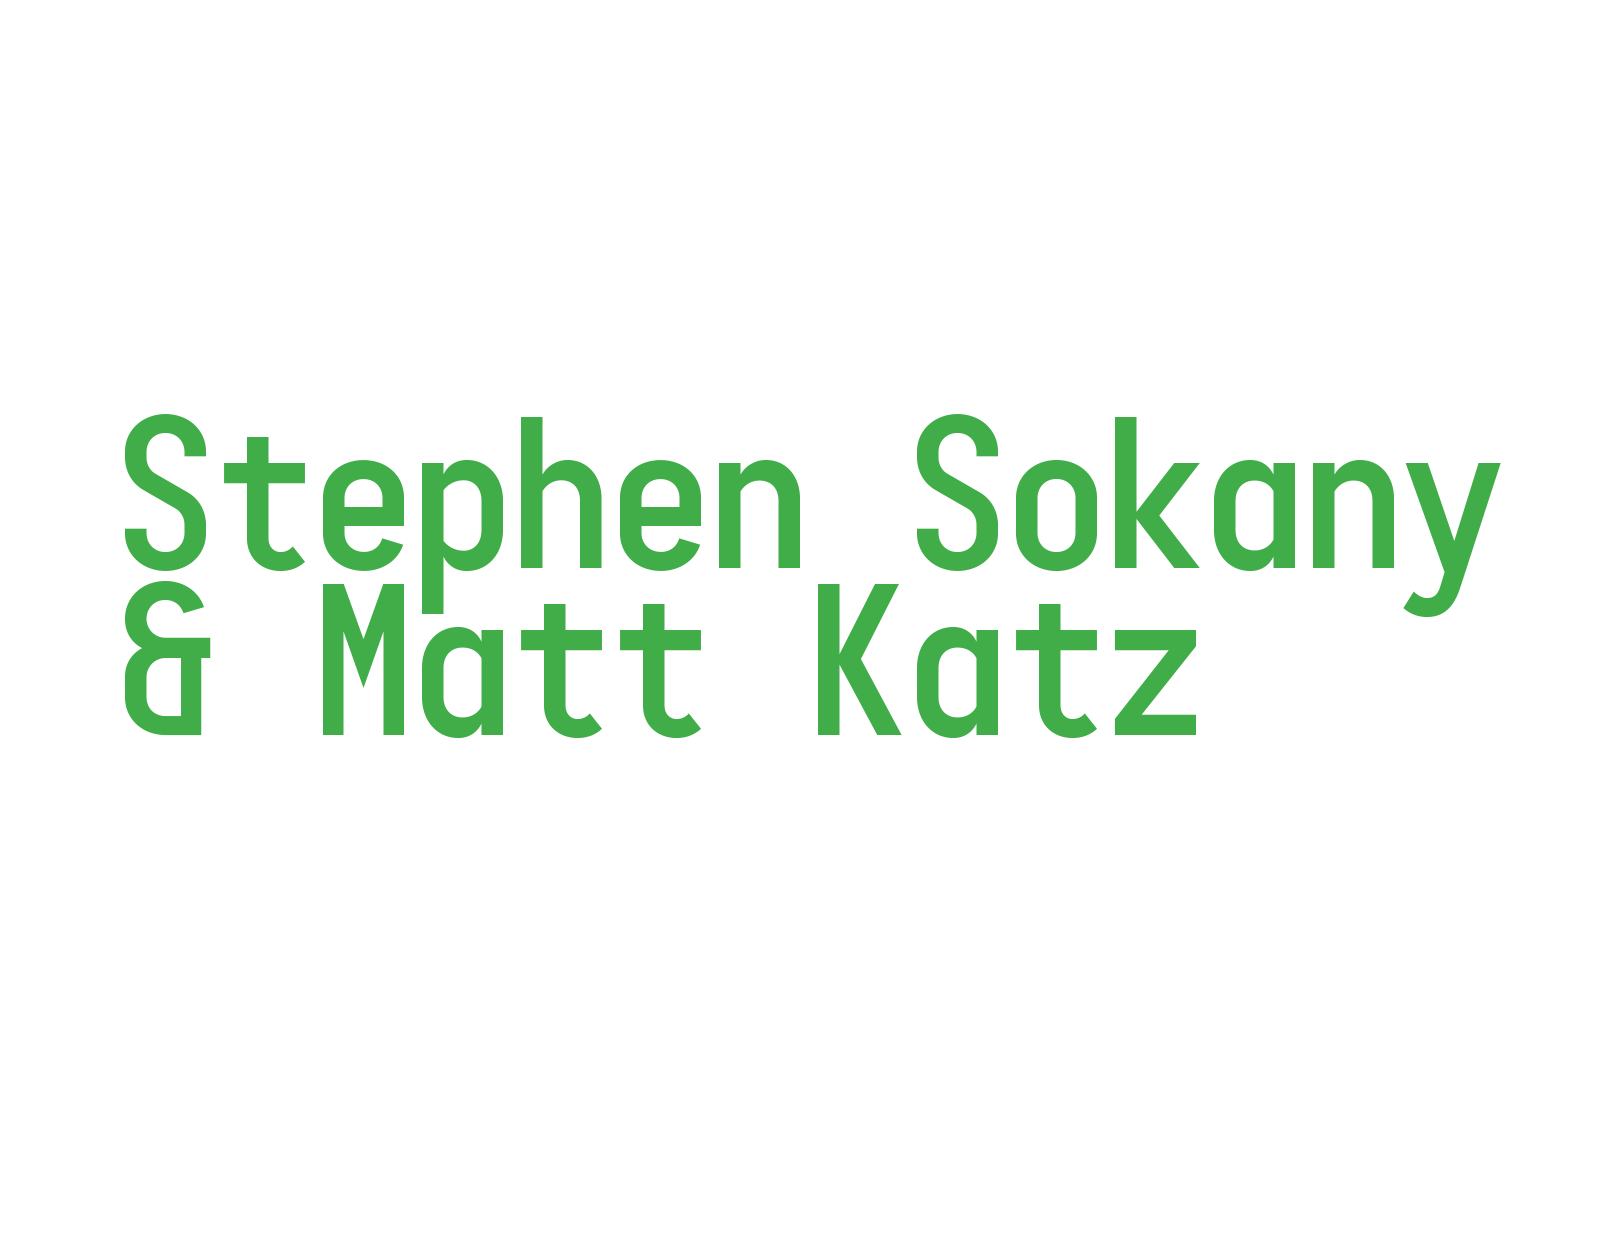 Stephen Sokany & Matt Katz